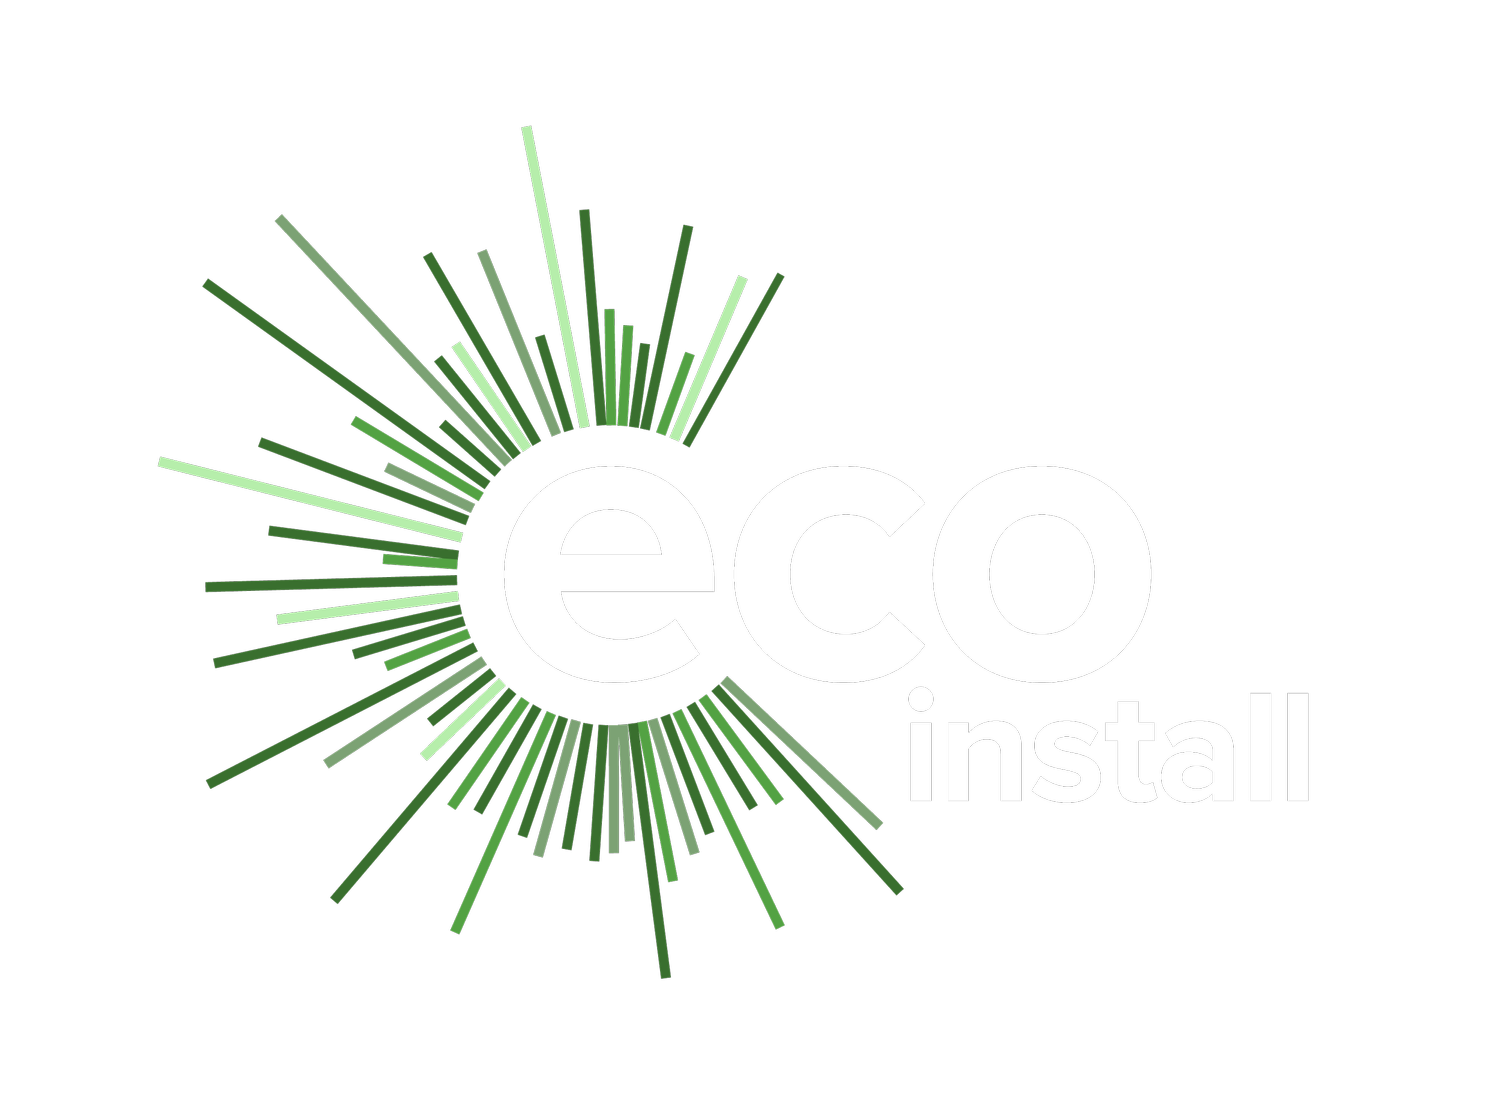 Eco Install